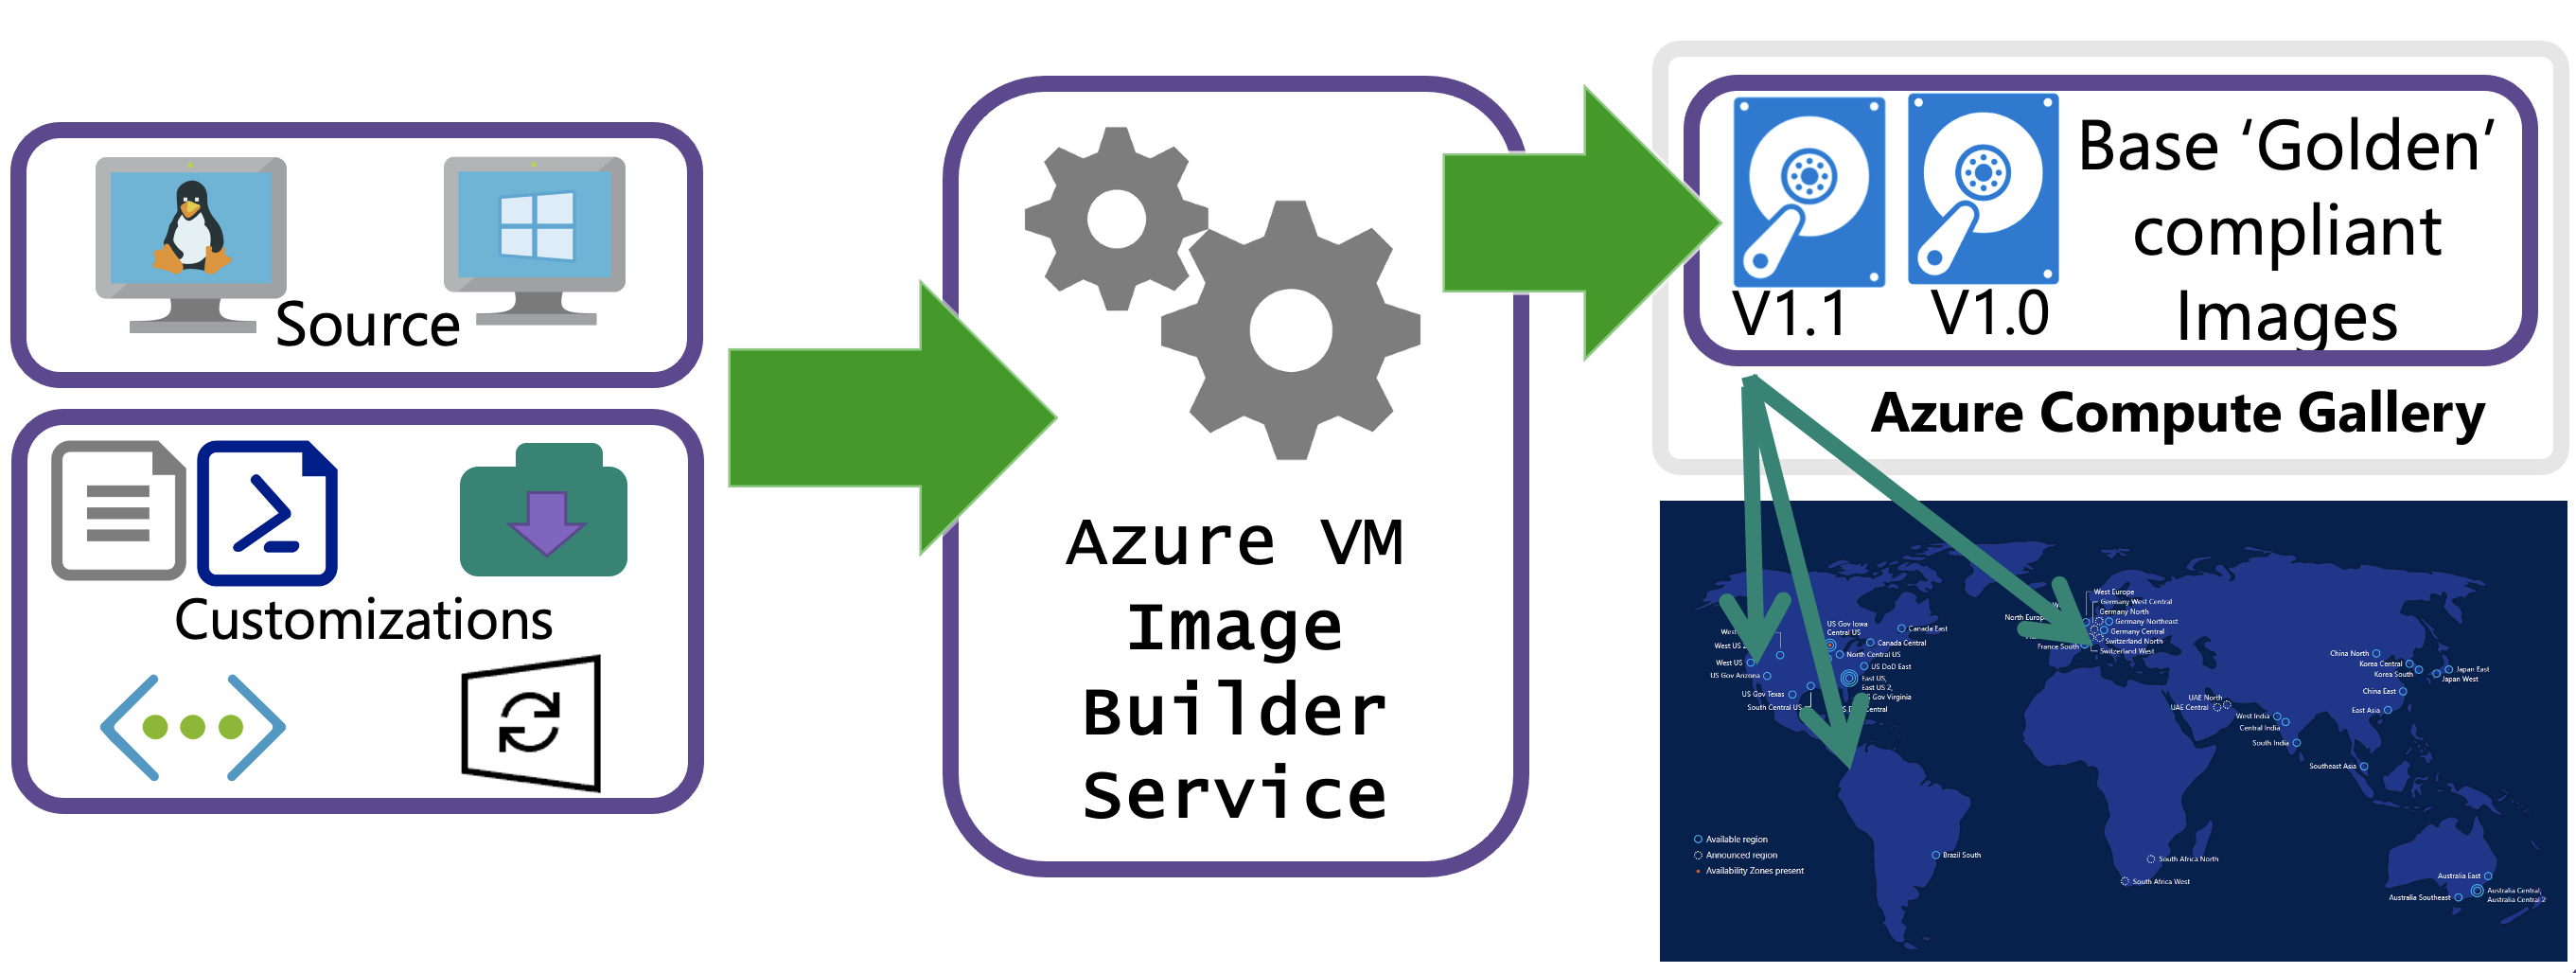 显示了源 (Windows/Linux)、自定义项（Shell、PowerShell、Windows 重新启动和更新、添加文件）和使用 Azure Compute Gallery 进行全局分发的 Azure VM 映像生成器流程图